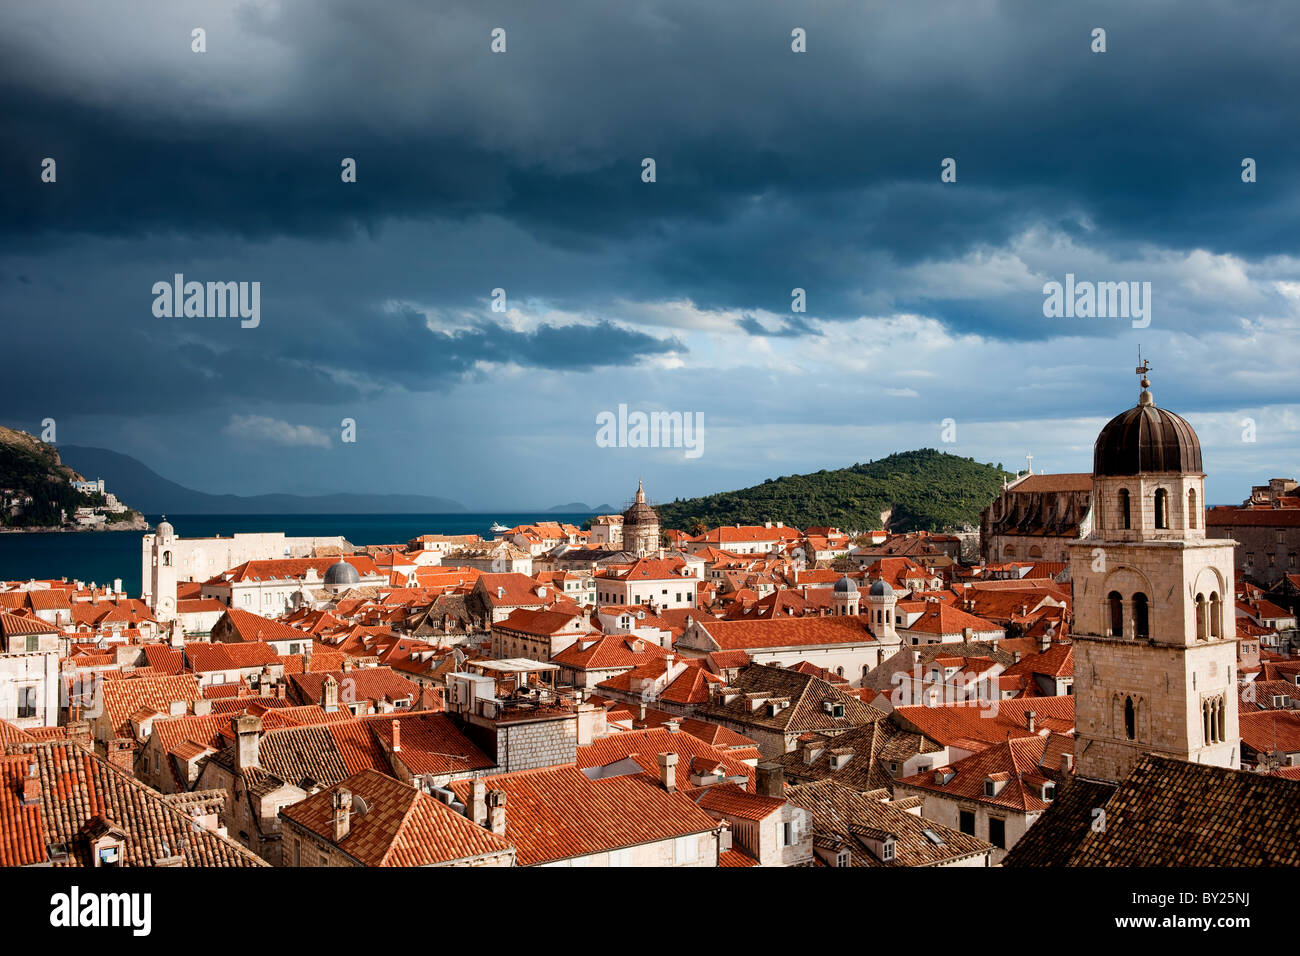 Vieille ville de Dubrovnik sur la mer Adriatique en Croatie, juste avant la tempête Banque D'Images